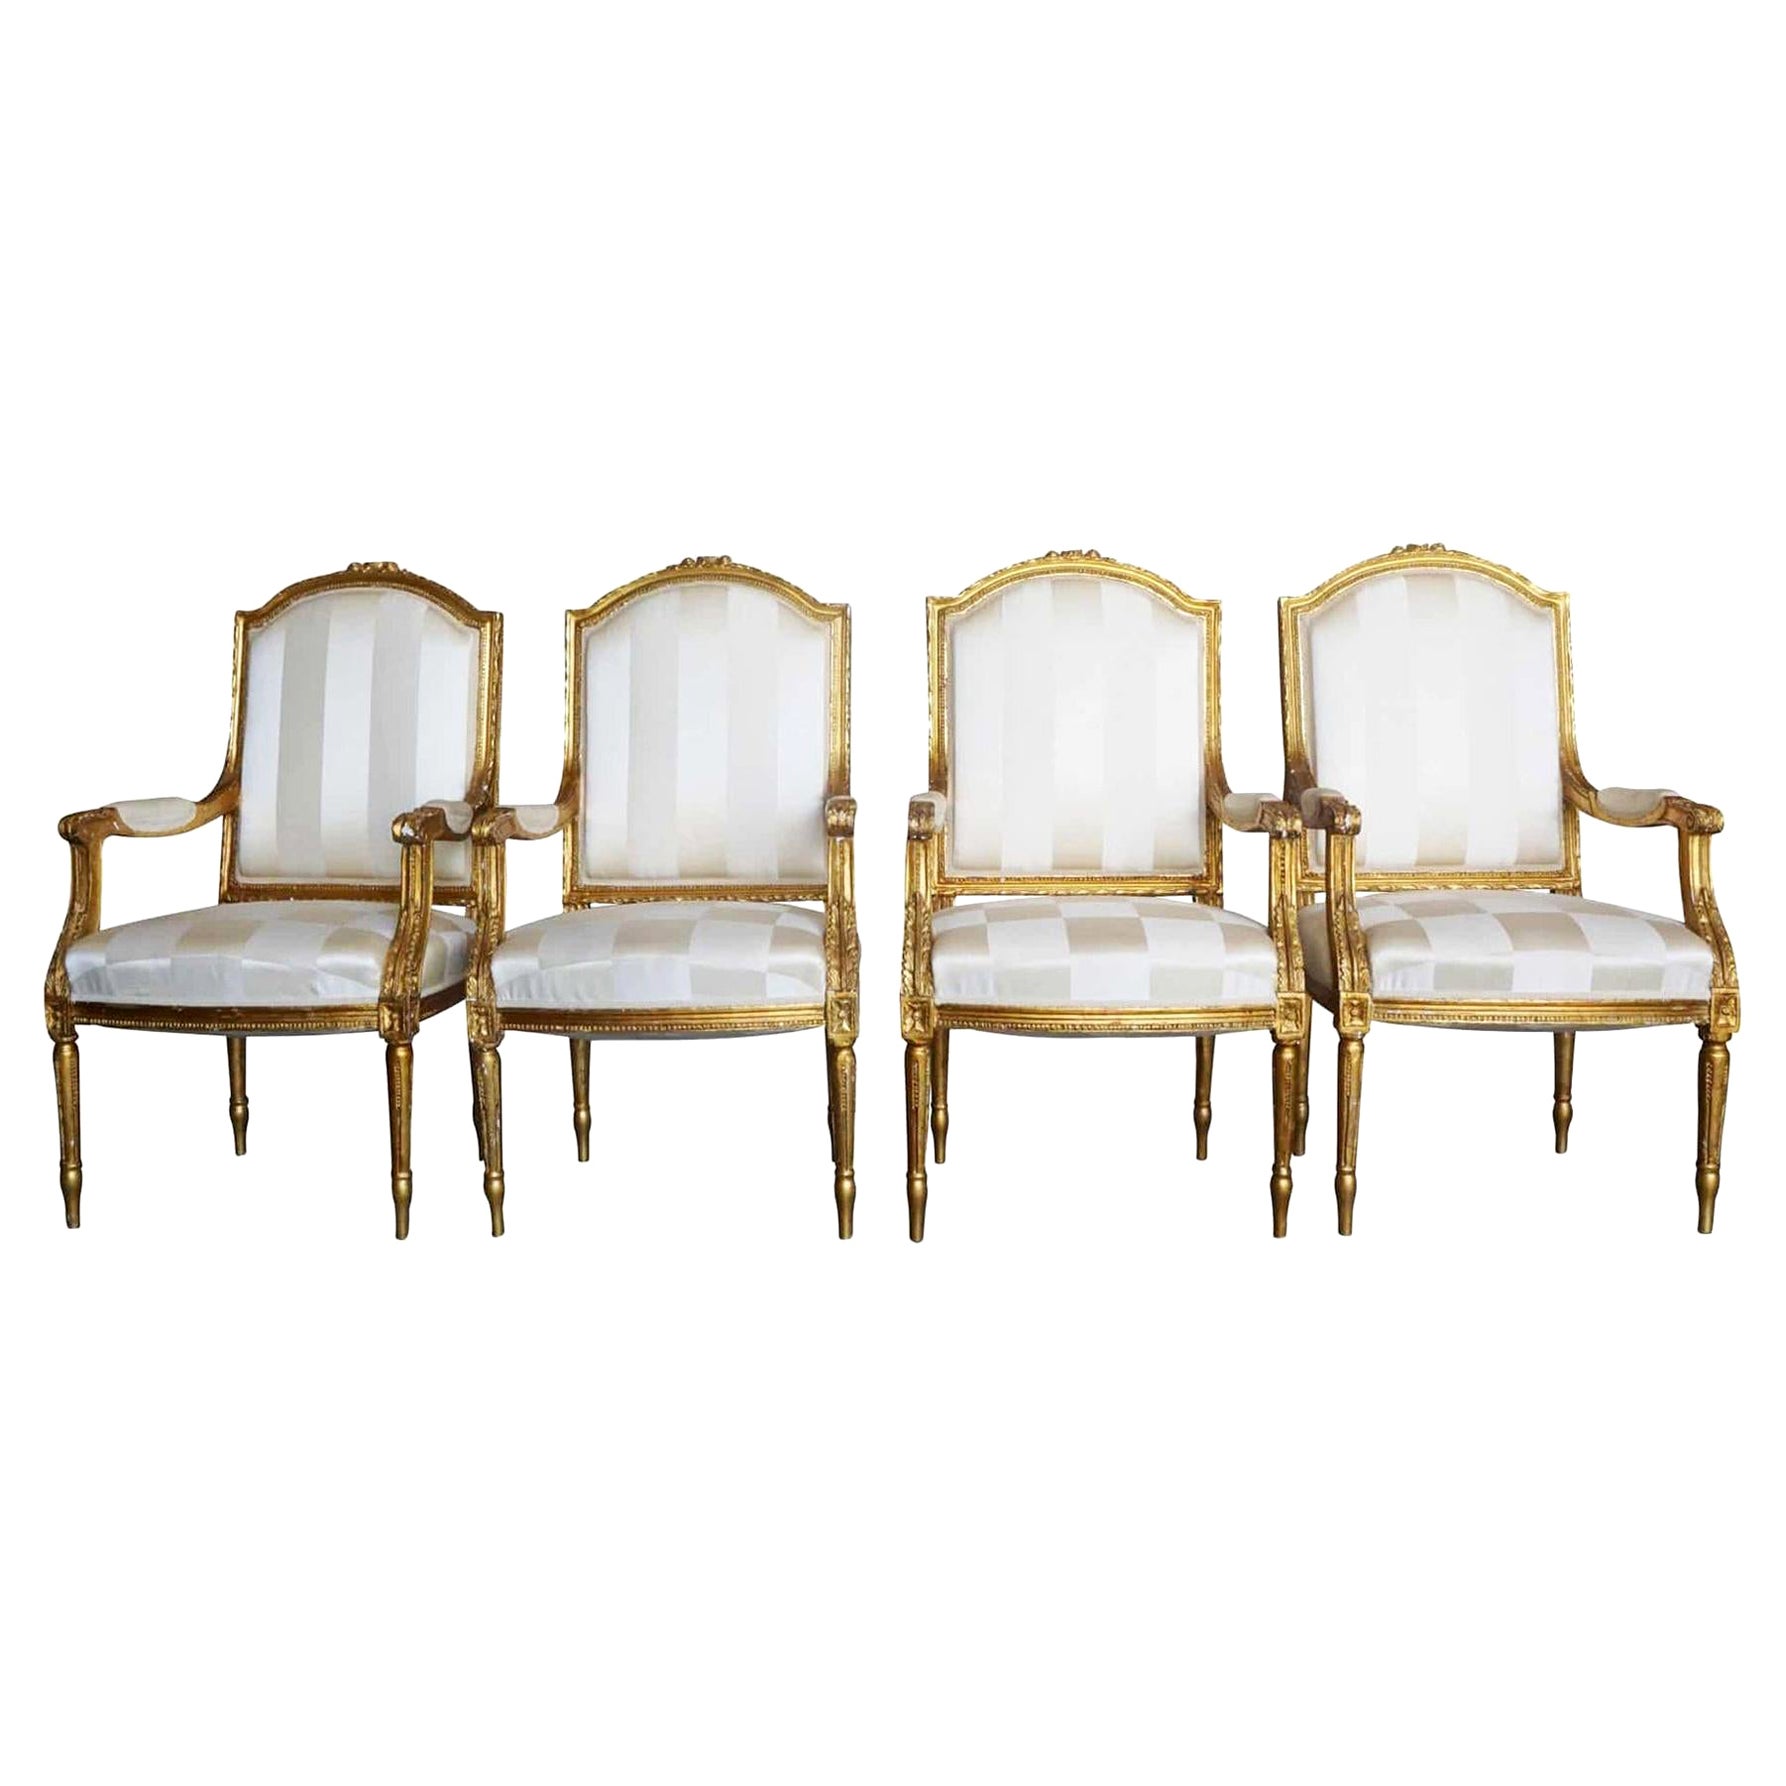 Ensemble français du 19ème siècle de quatre fauteuils anciens en bois doré